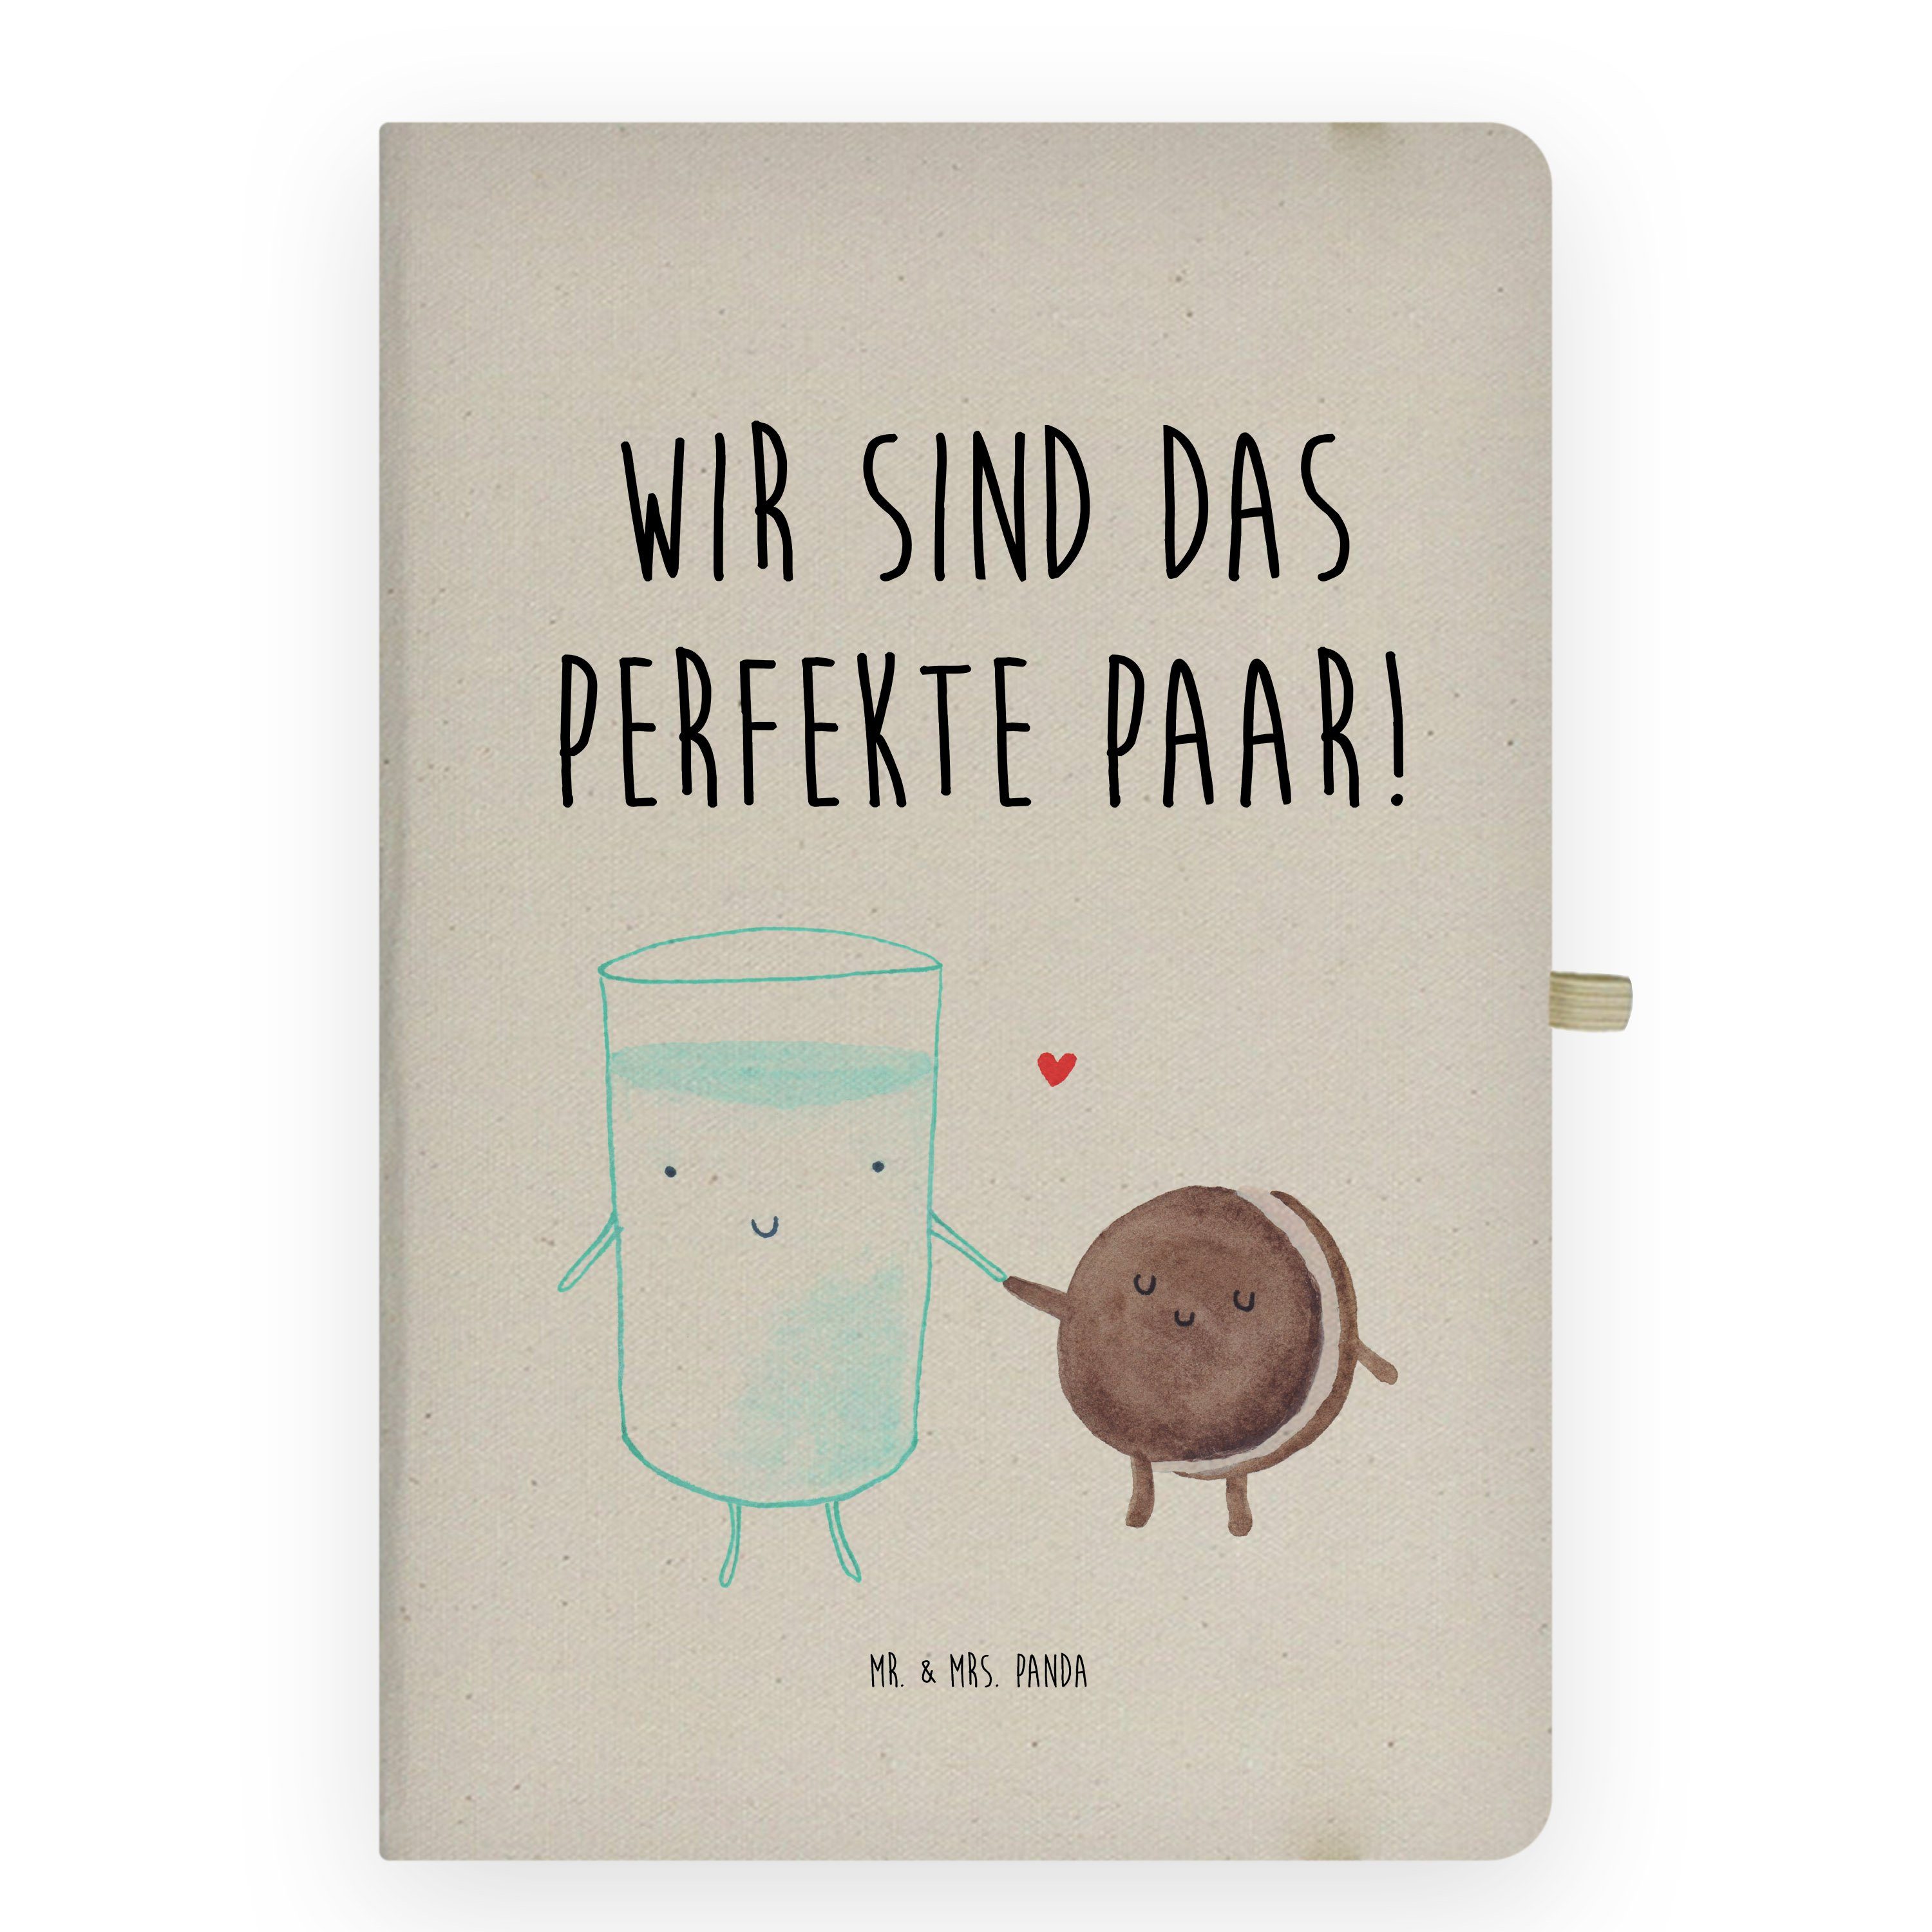 Mr. & Mrs. Panda Notizbuch Milch & Keks - Transparent - Geschenk, lustige Sprüche, perfektes Paa